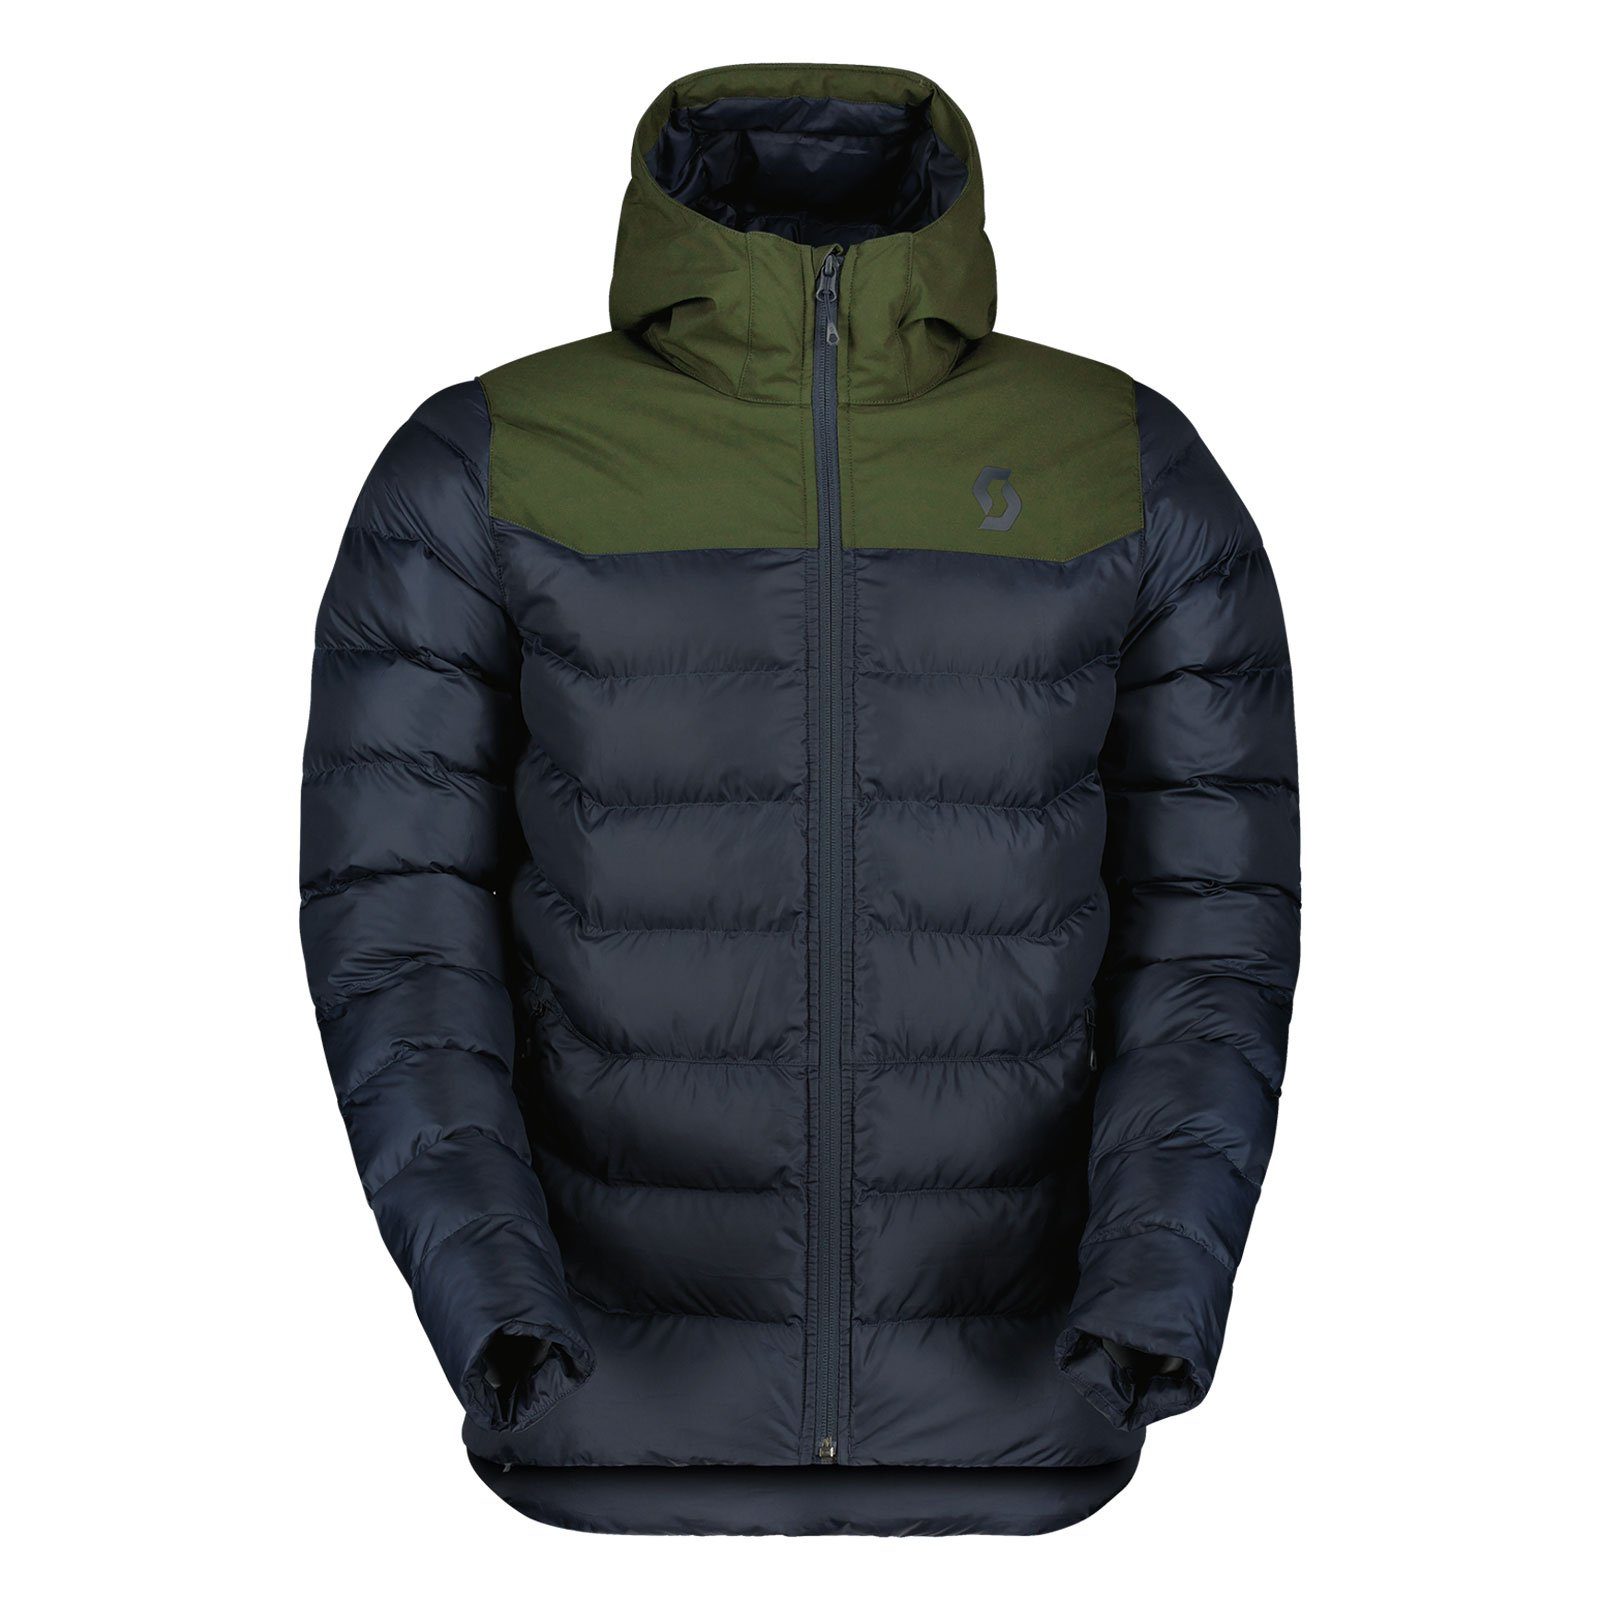 Scott Winterjacke Insuloft Warm nachhaltig green / dark 7504 teilweise fir Jacke hergestellt blue